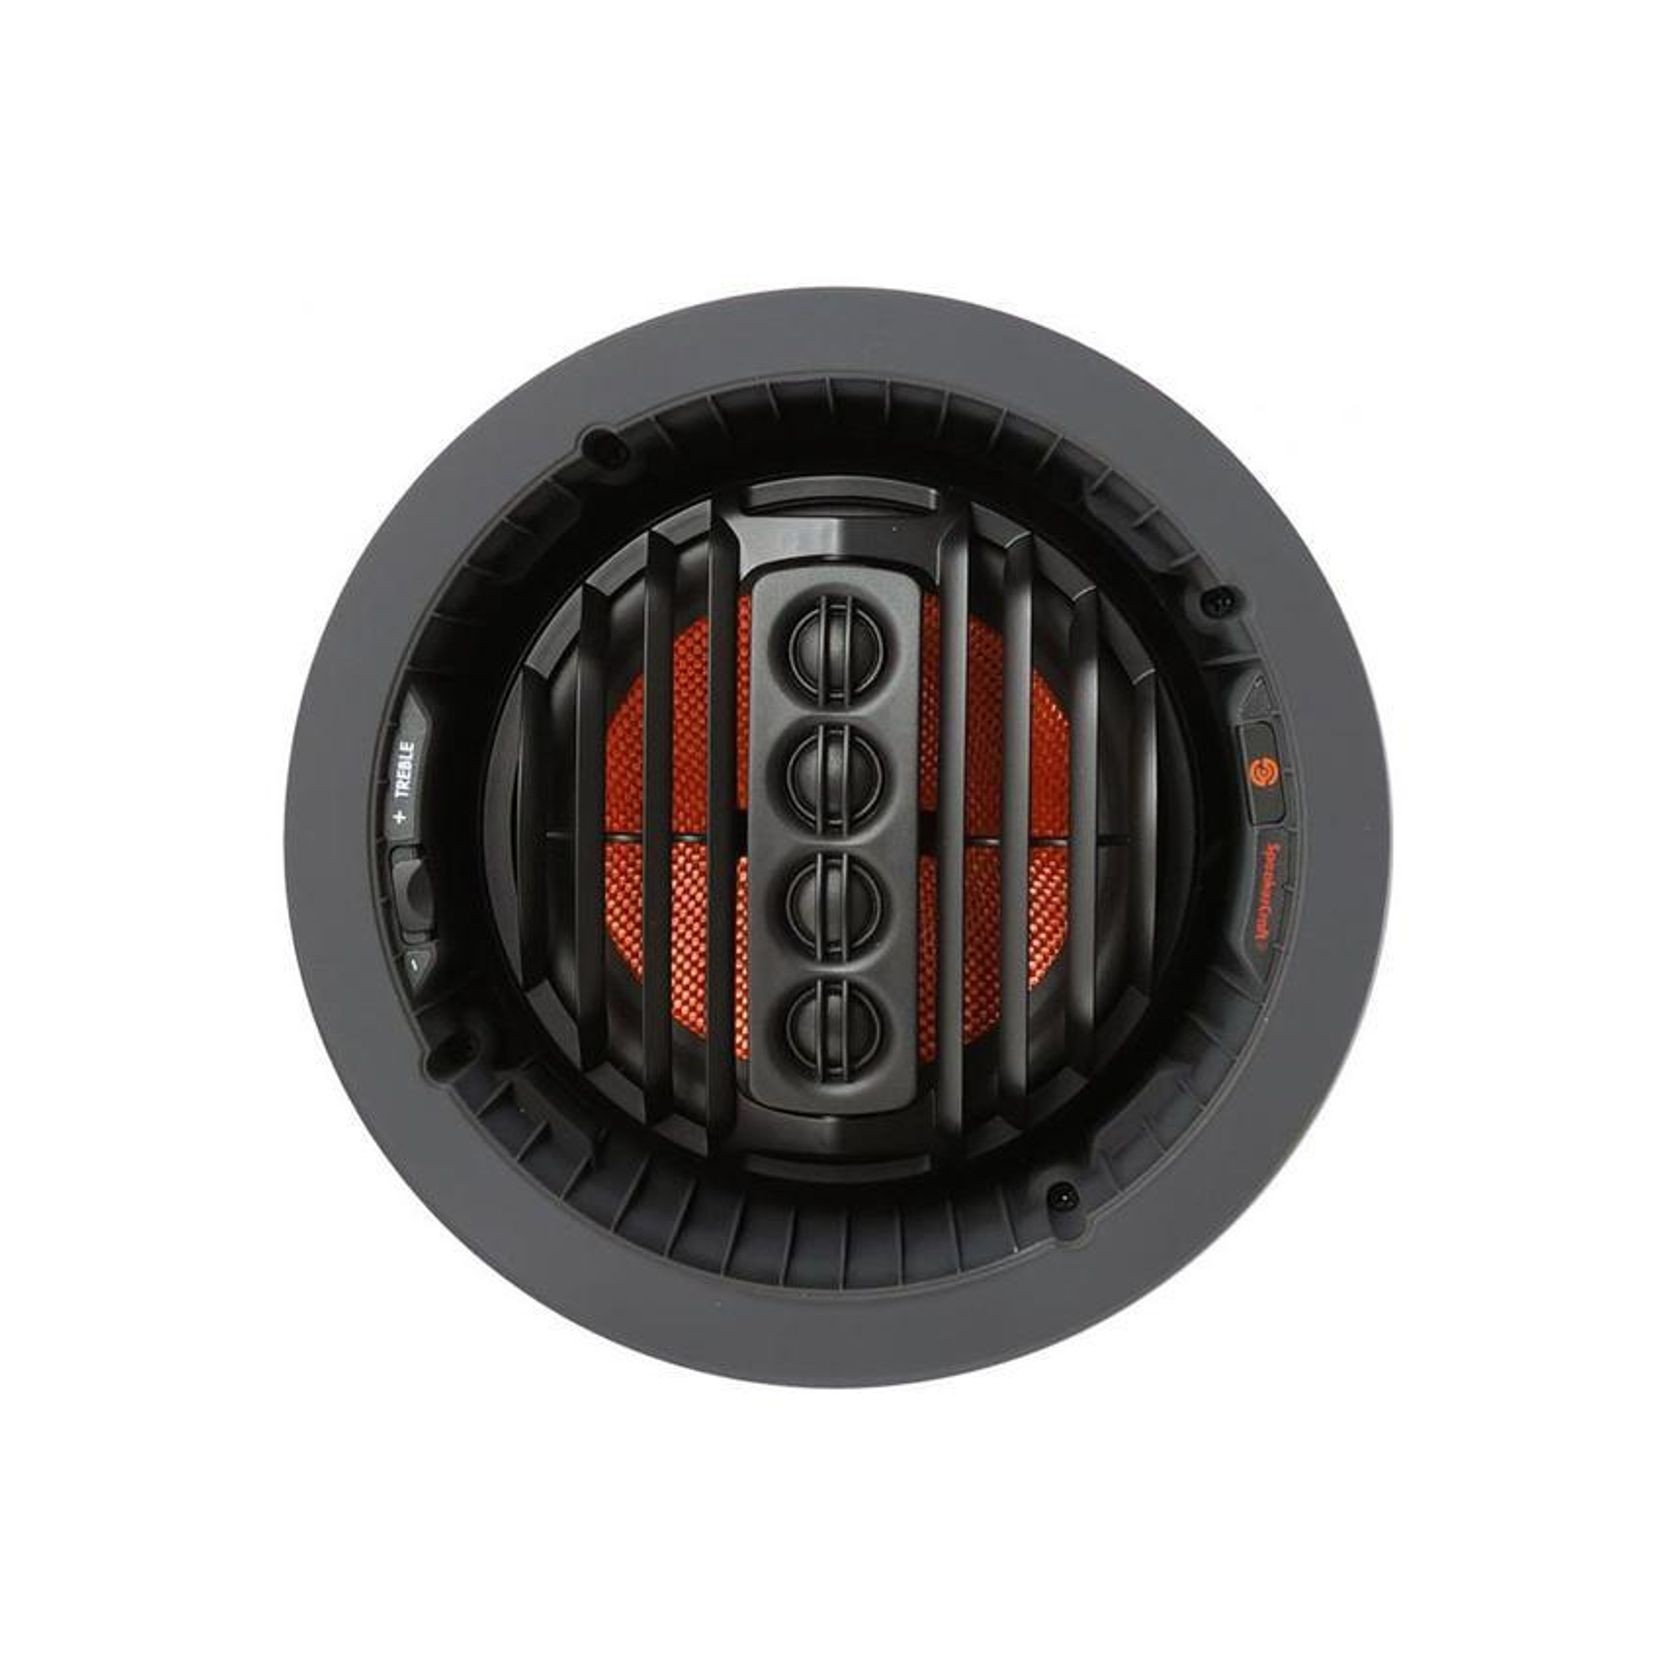 Speakercraft Profile Aim Series 272 In-Ceiling Speakers gallery detail image